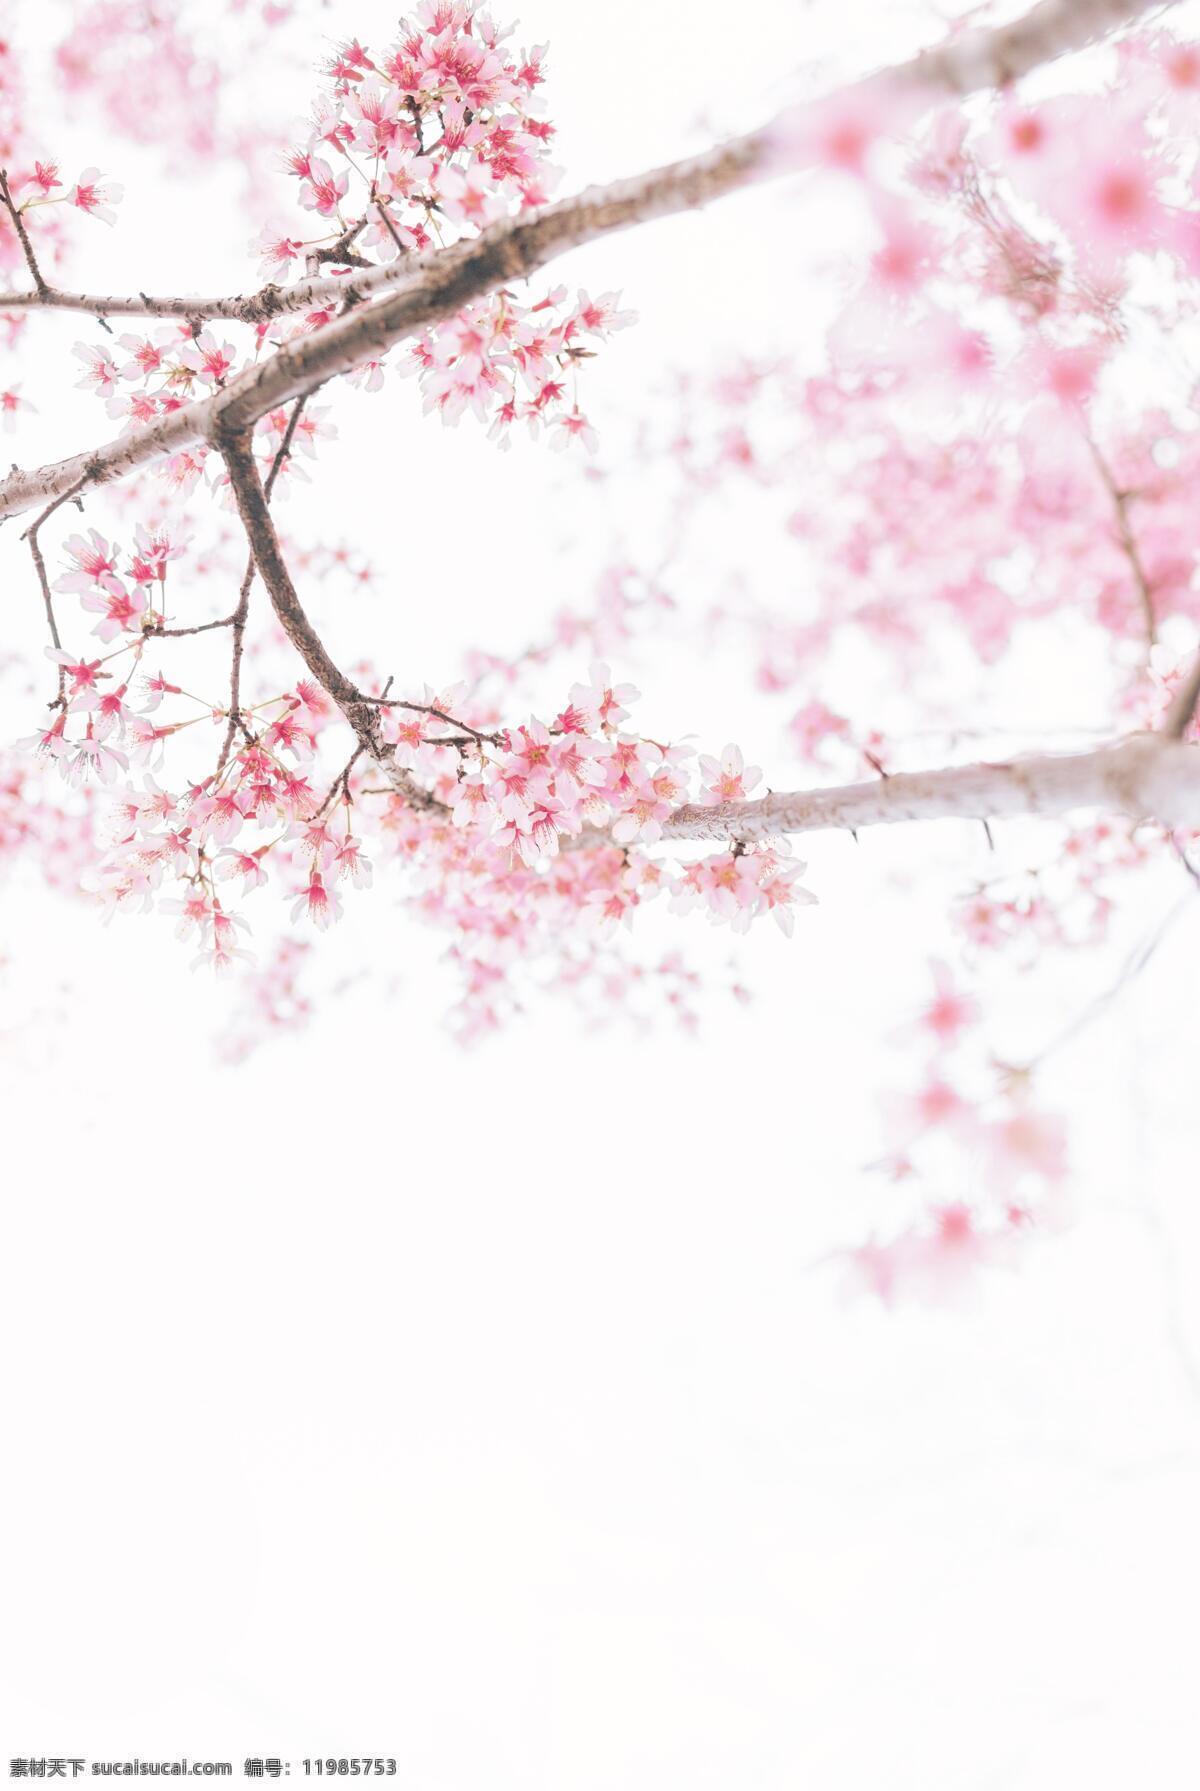 日本 富士山 樱花 绽放 粉色 迎春 观光 旅游 度假 休闲 4k 高清 图 收藏 自然景观 自然风光